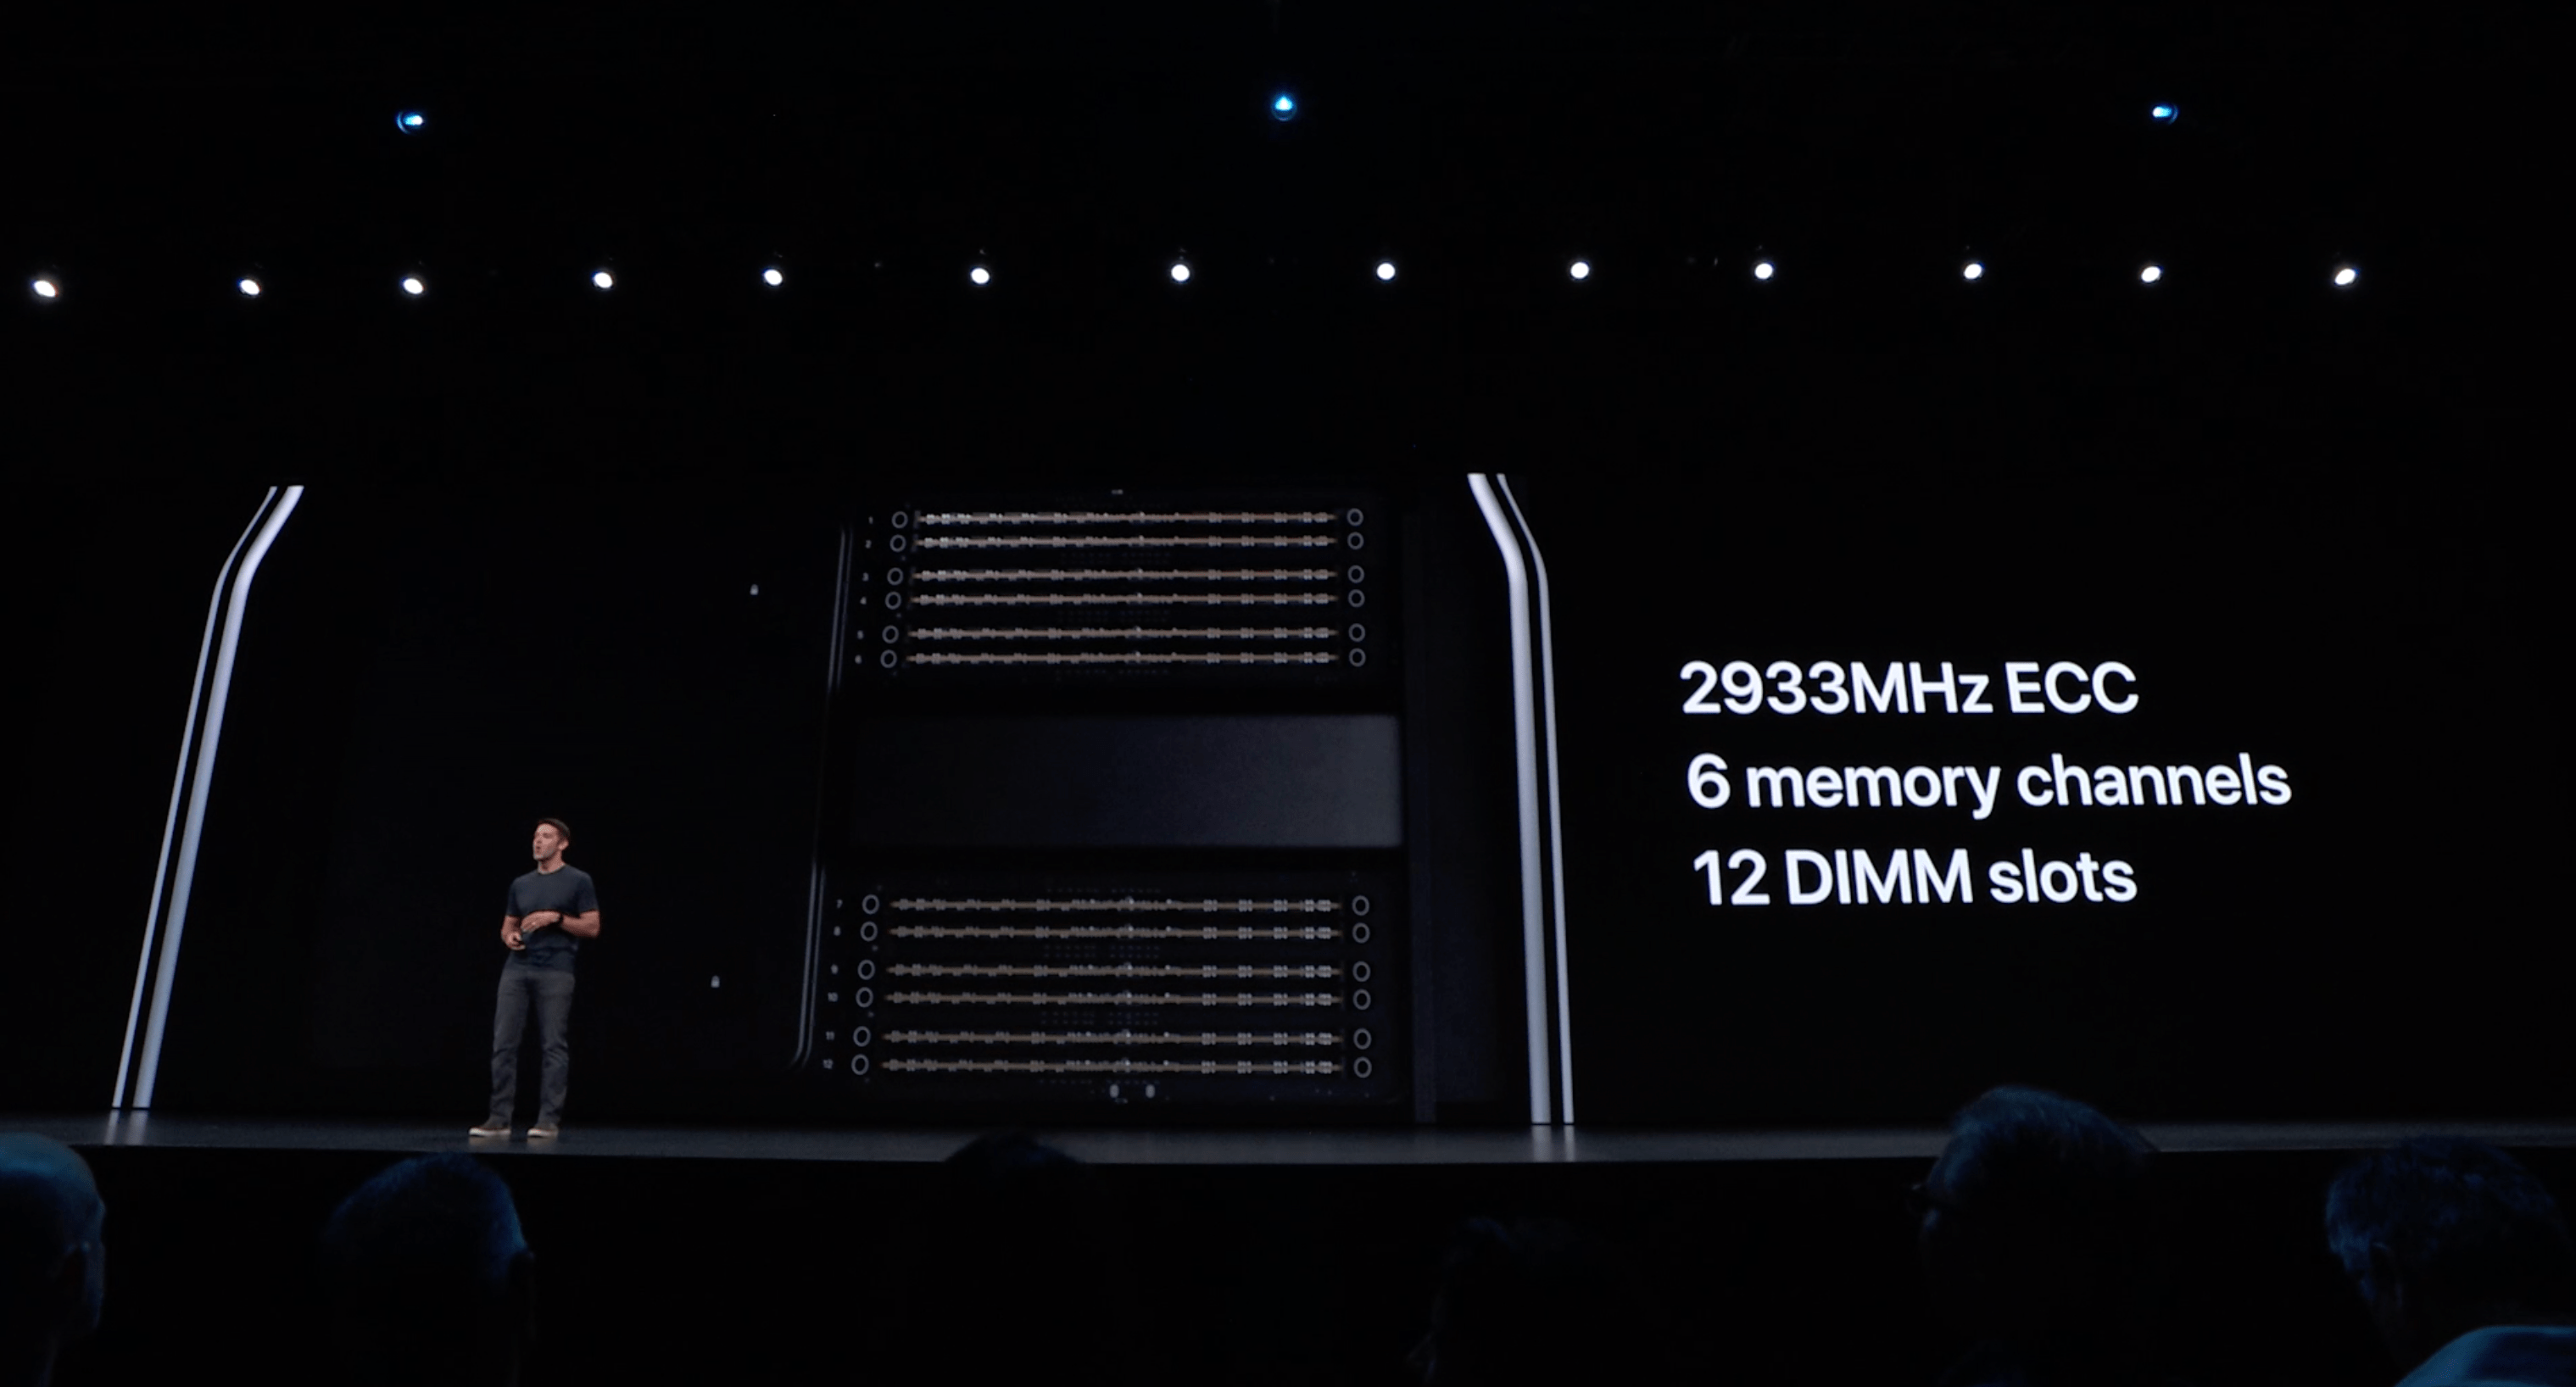 [WWDC19] Apple ra mắt Mac Pro 2019 với thiết,
cơ động hơn, cấu hình siêu mạnh, giá từ 5999 USD